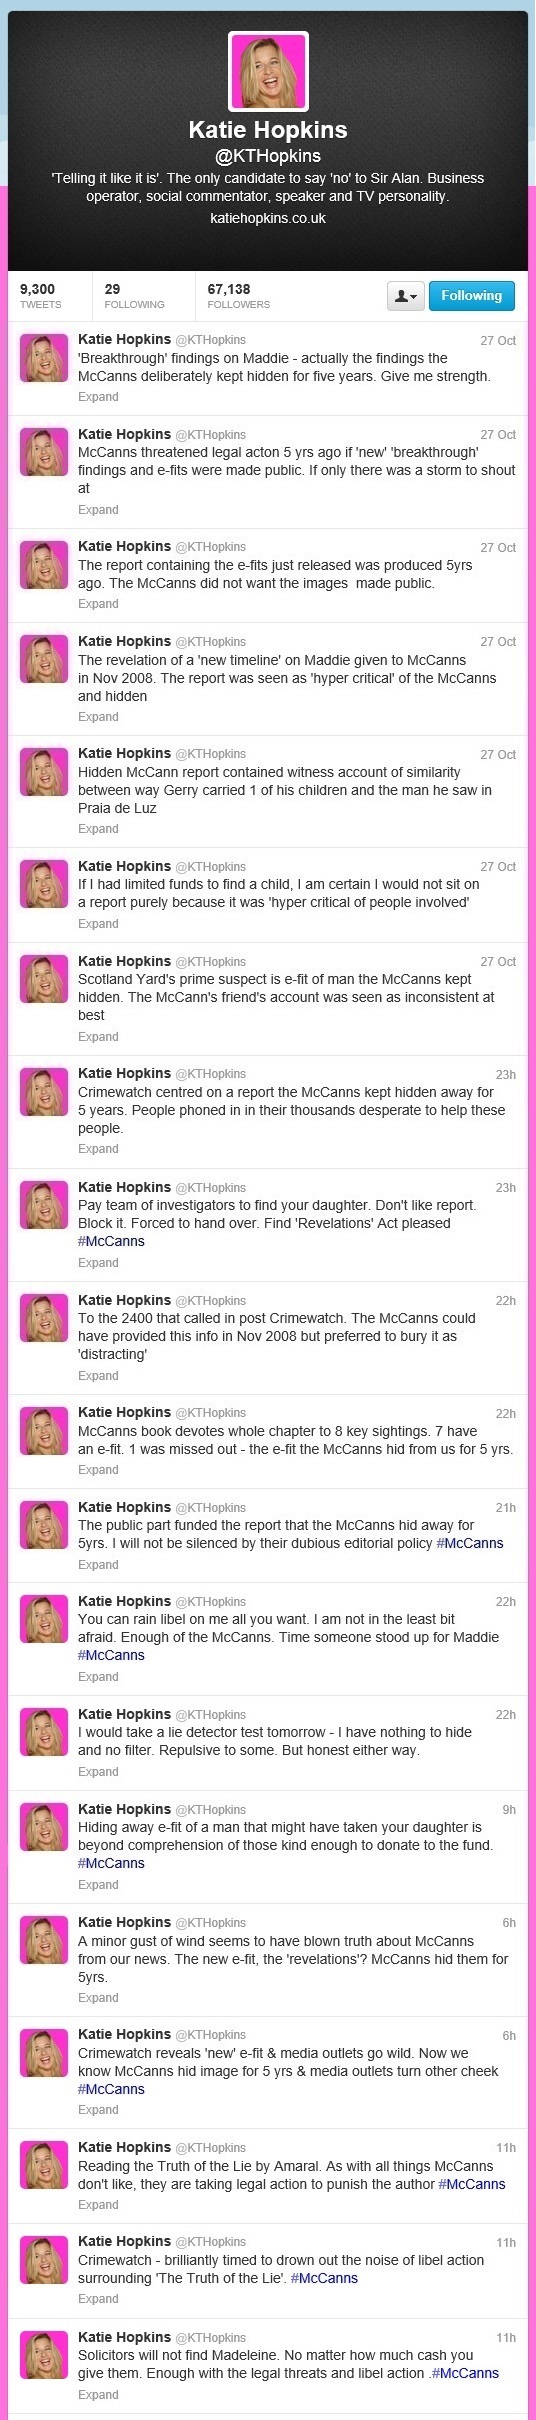 Katie Hopkins tweets, 27/28 October 2013